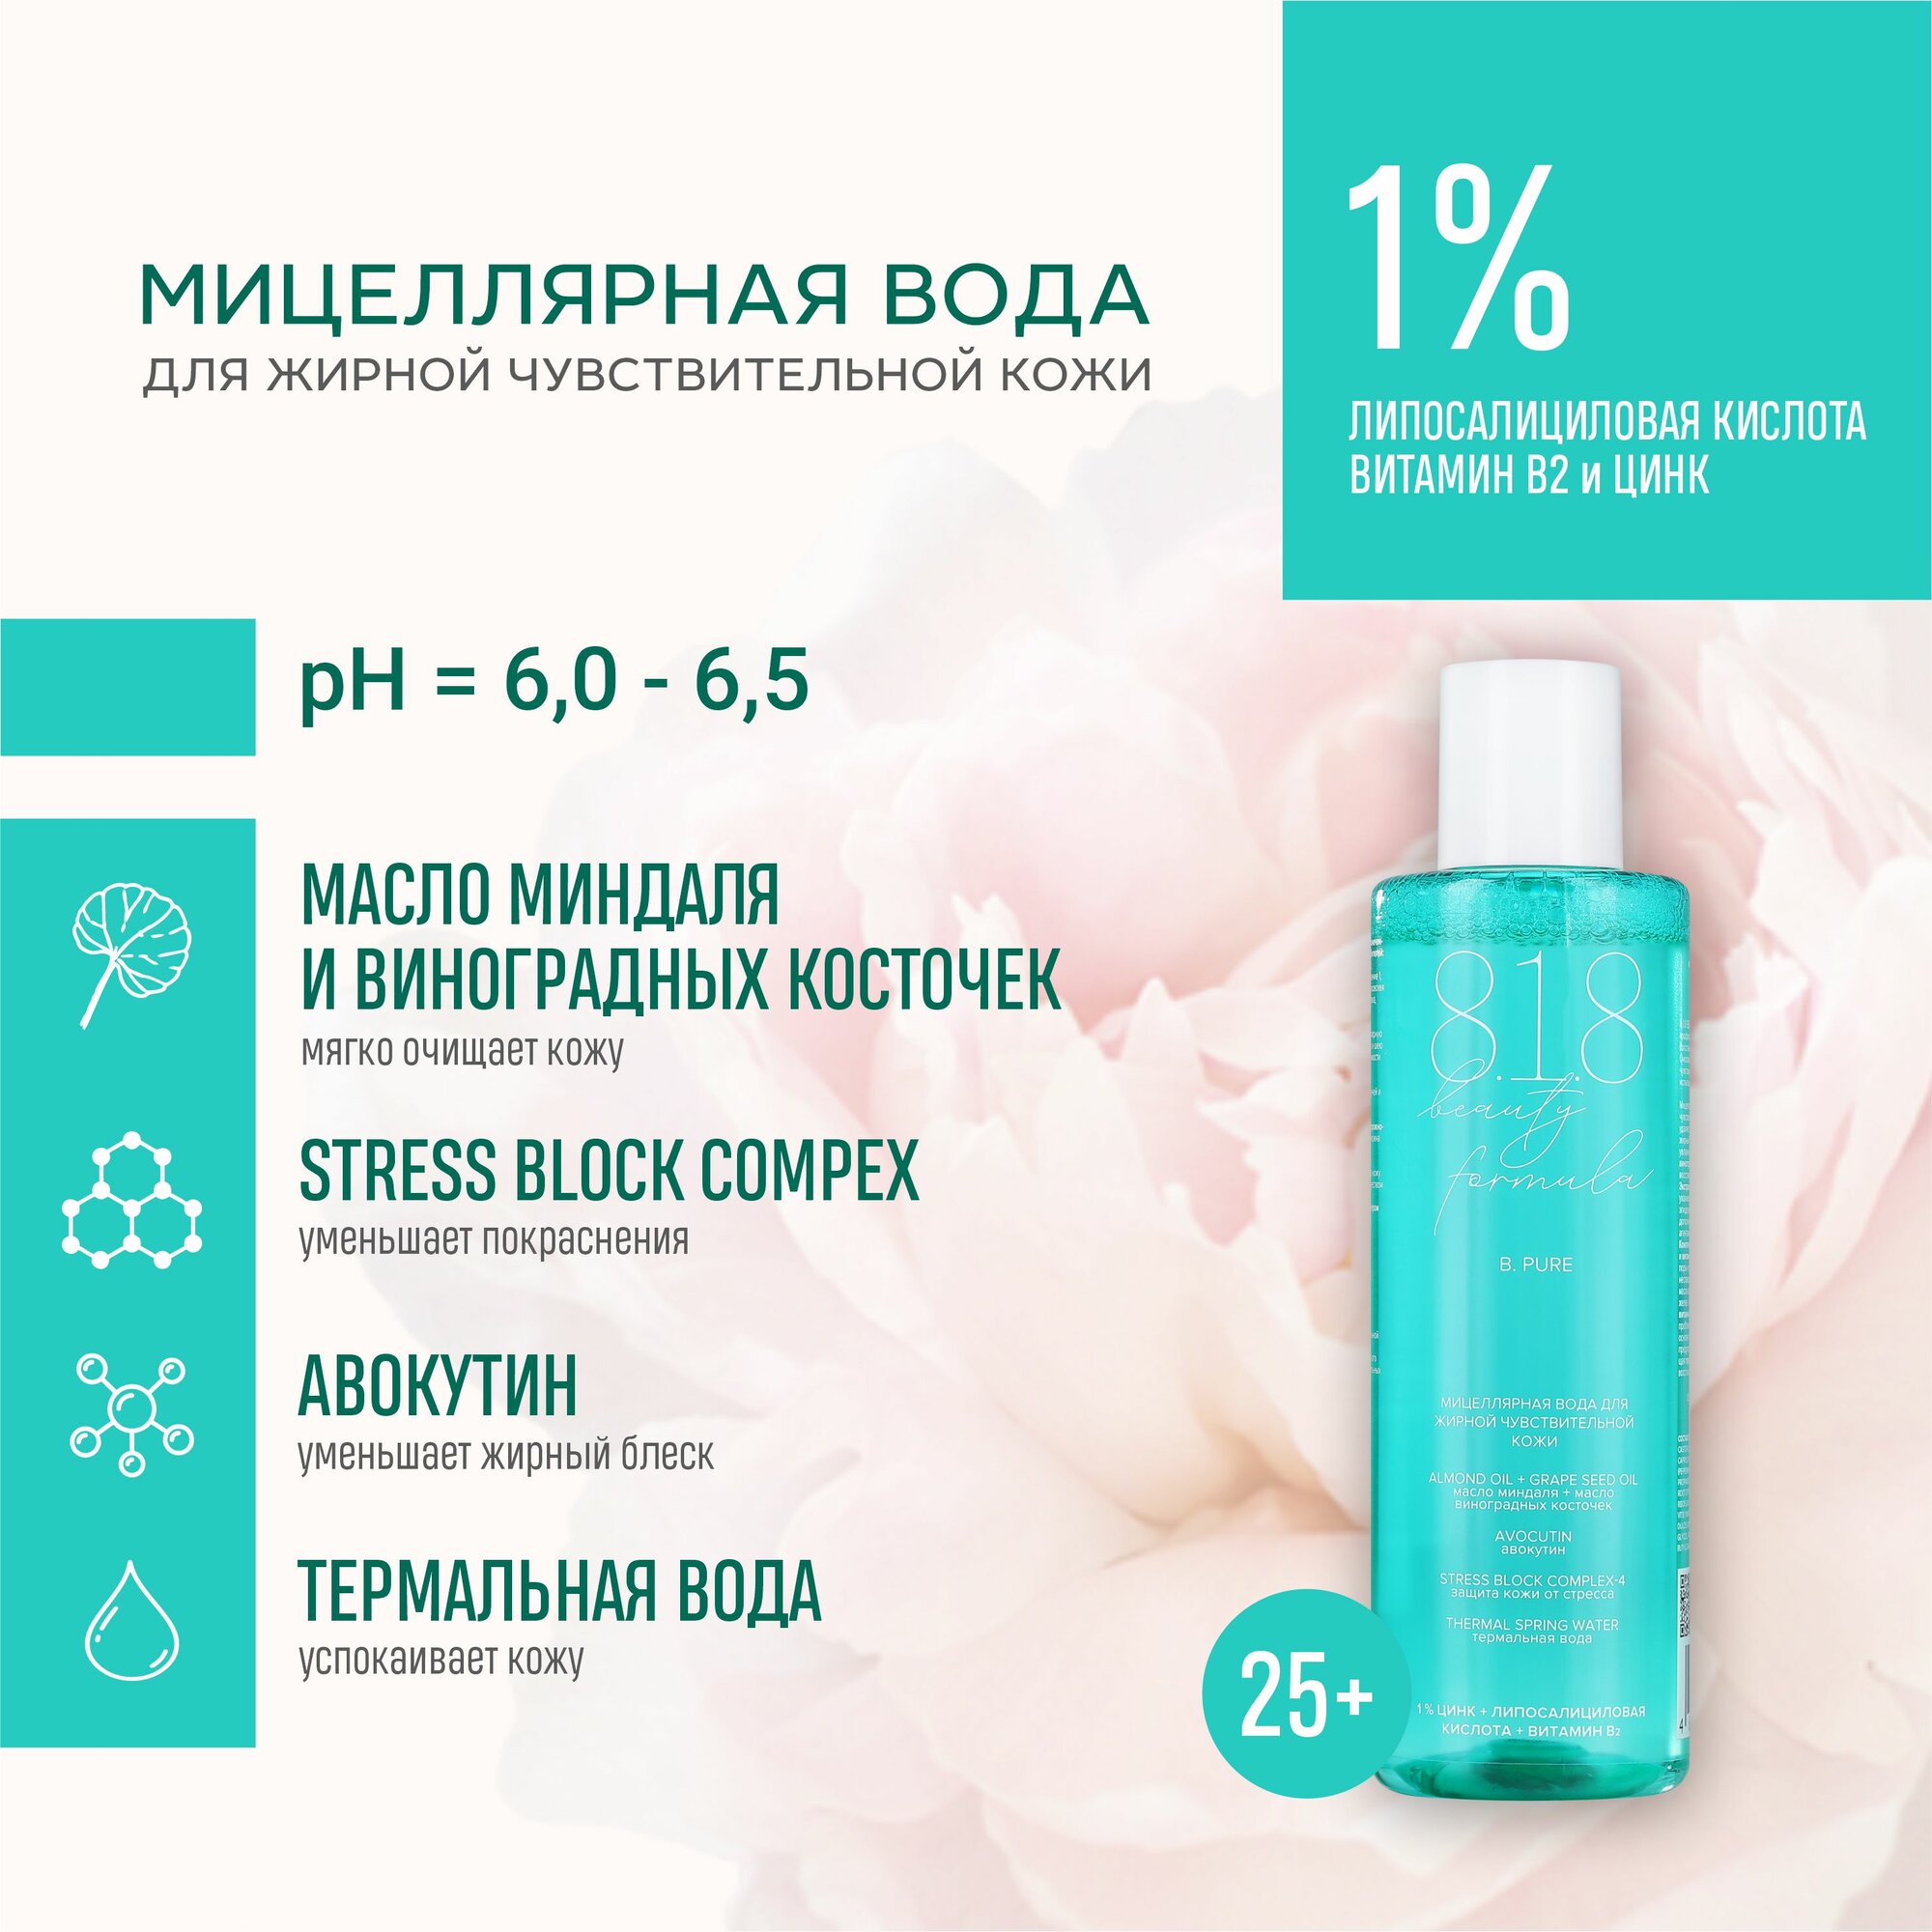 Мицеллярная вода для жирной чувствительной кожи 818 beauty formula estiqe, 200 мл